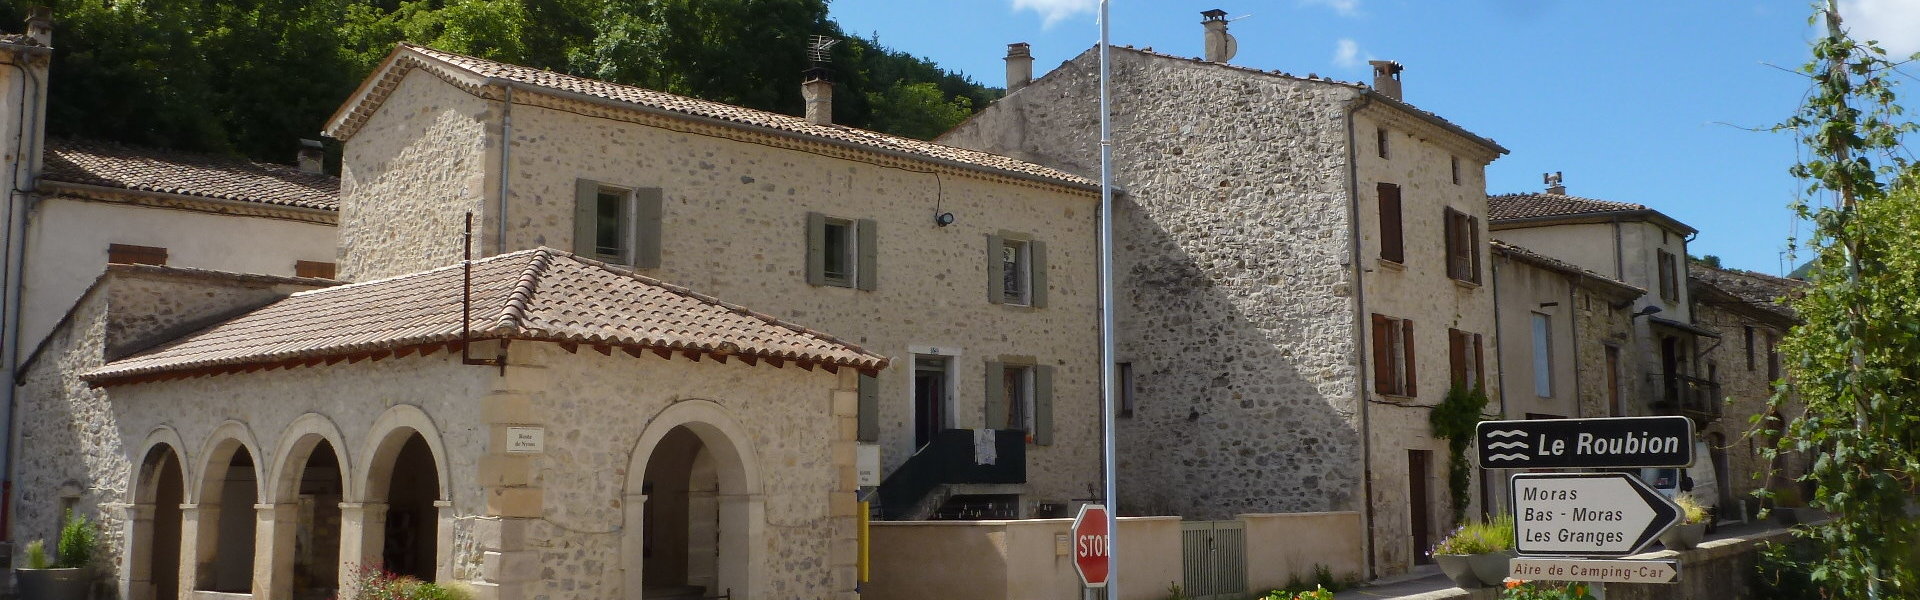 Service de l’eau - Commune de Bouvières - Département de la Drôme